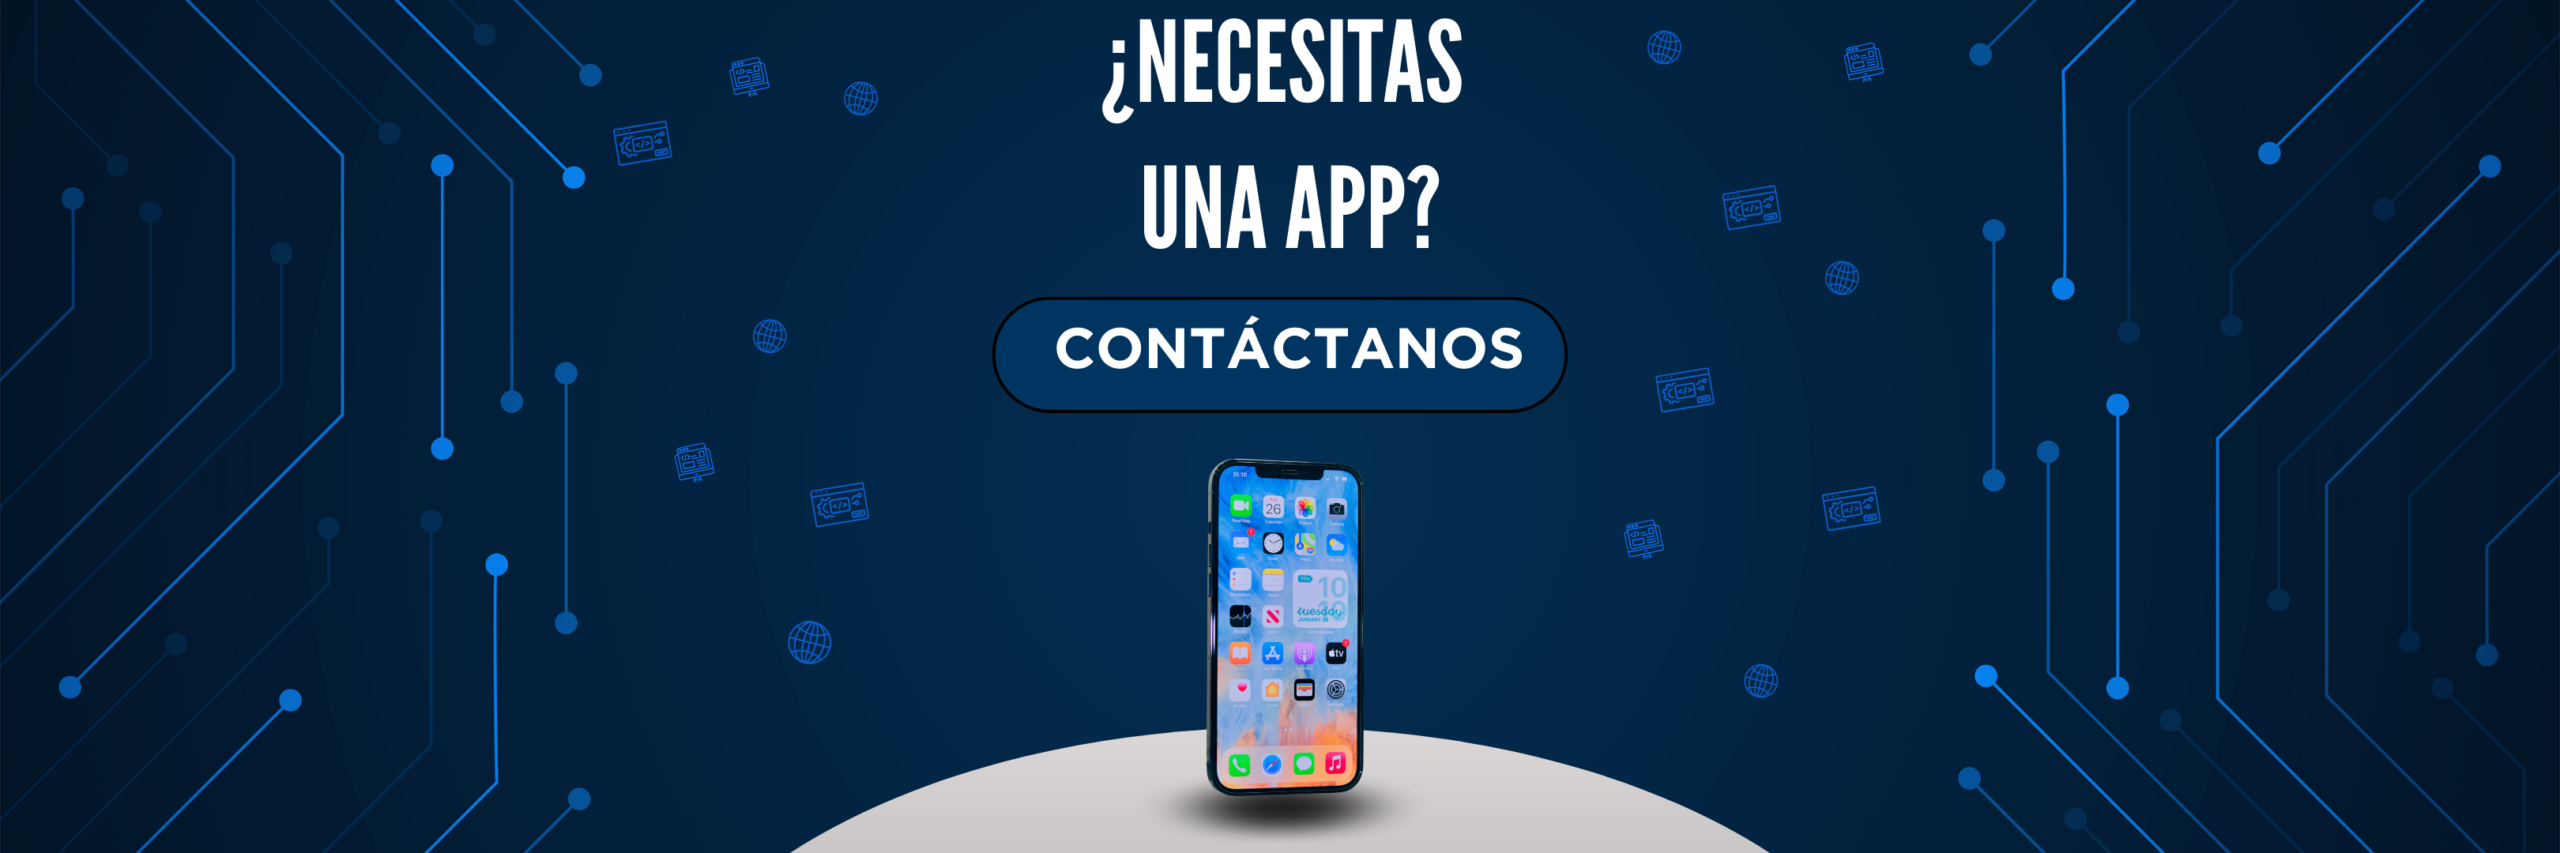 contacto app